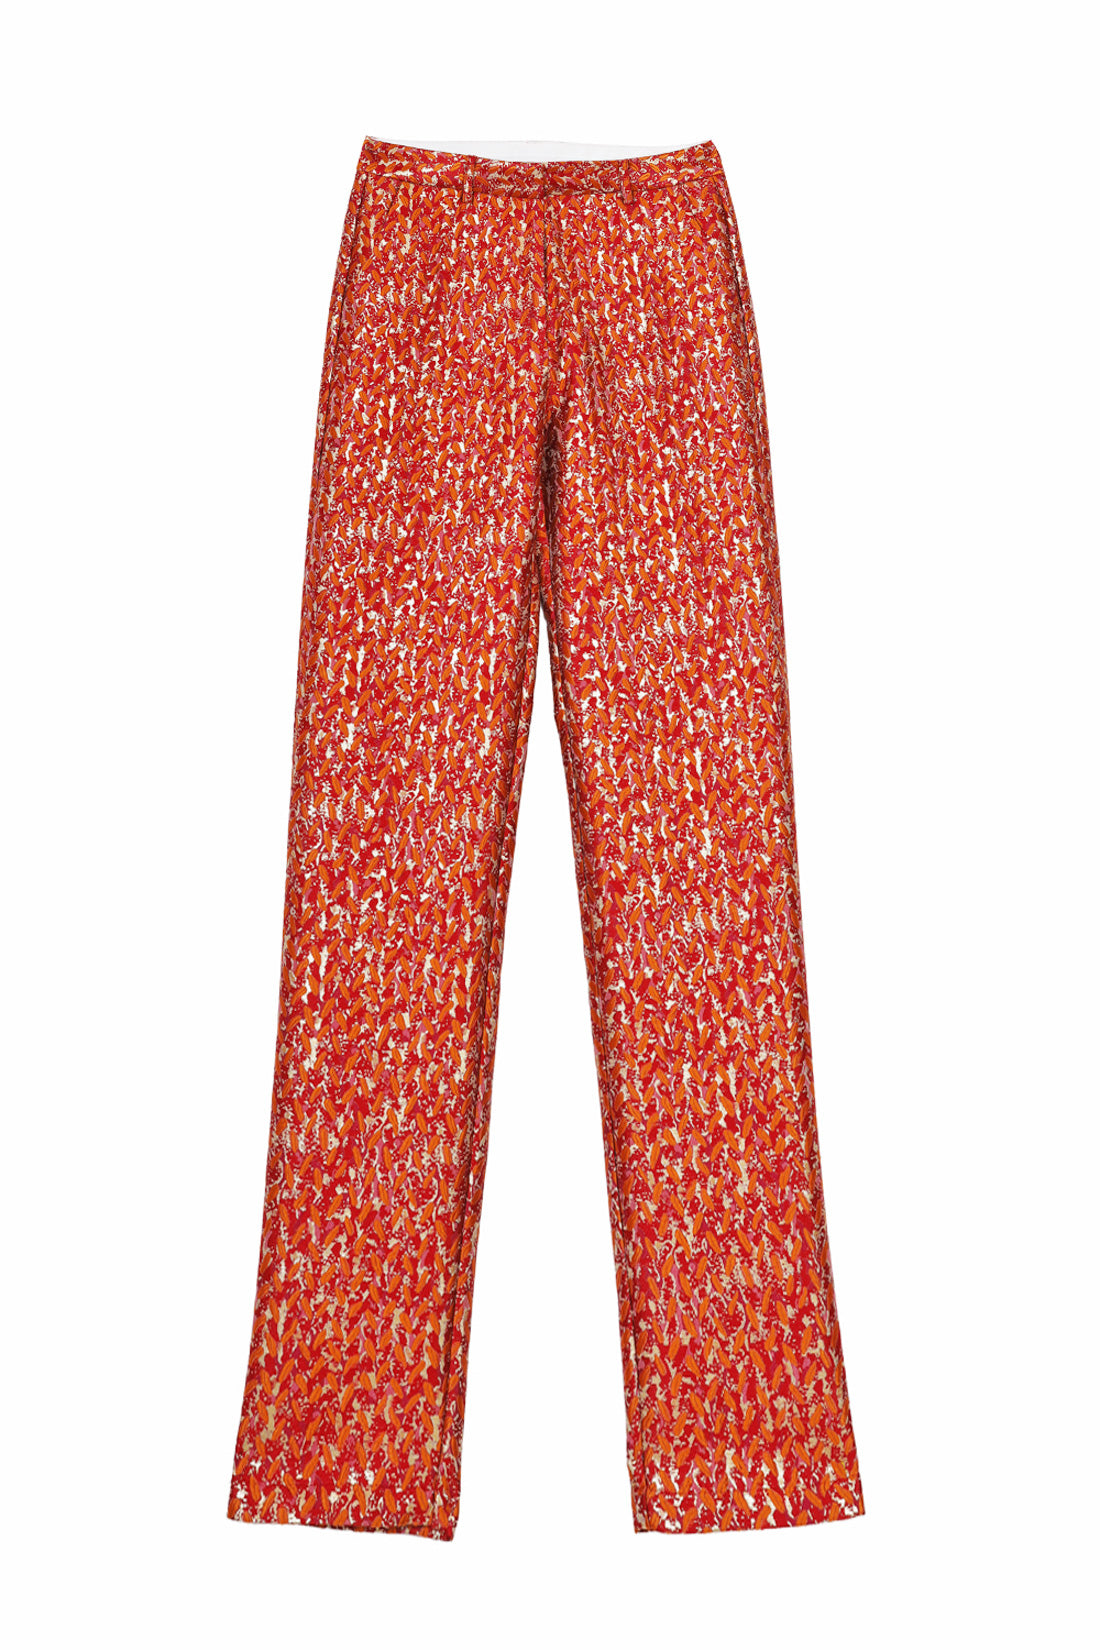 Pantalon Paddo - Rose Orange